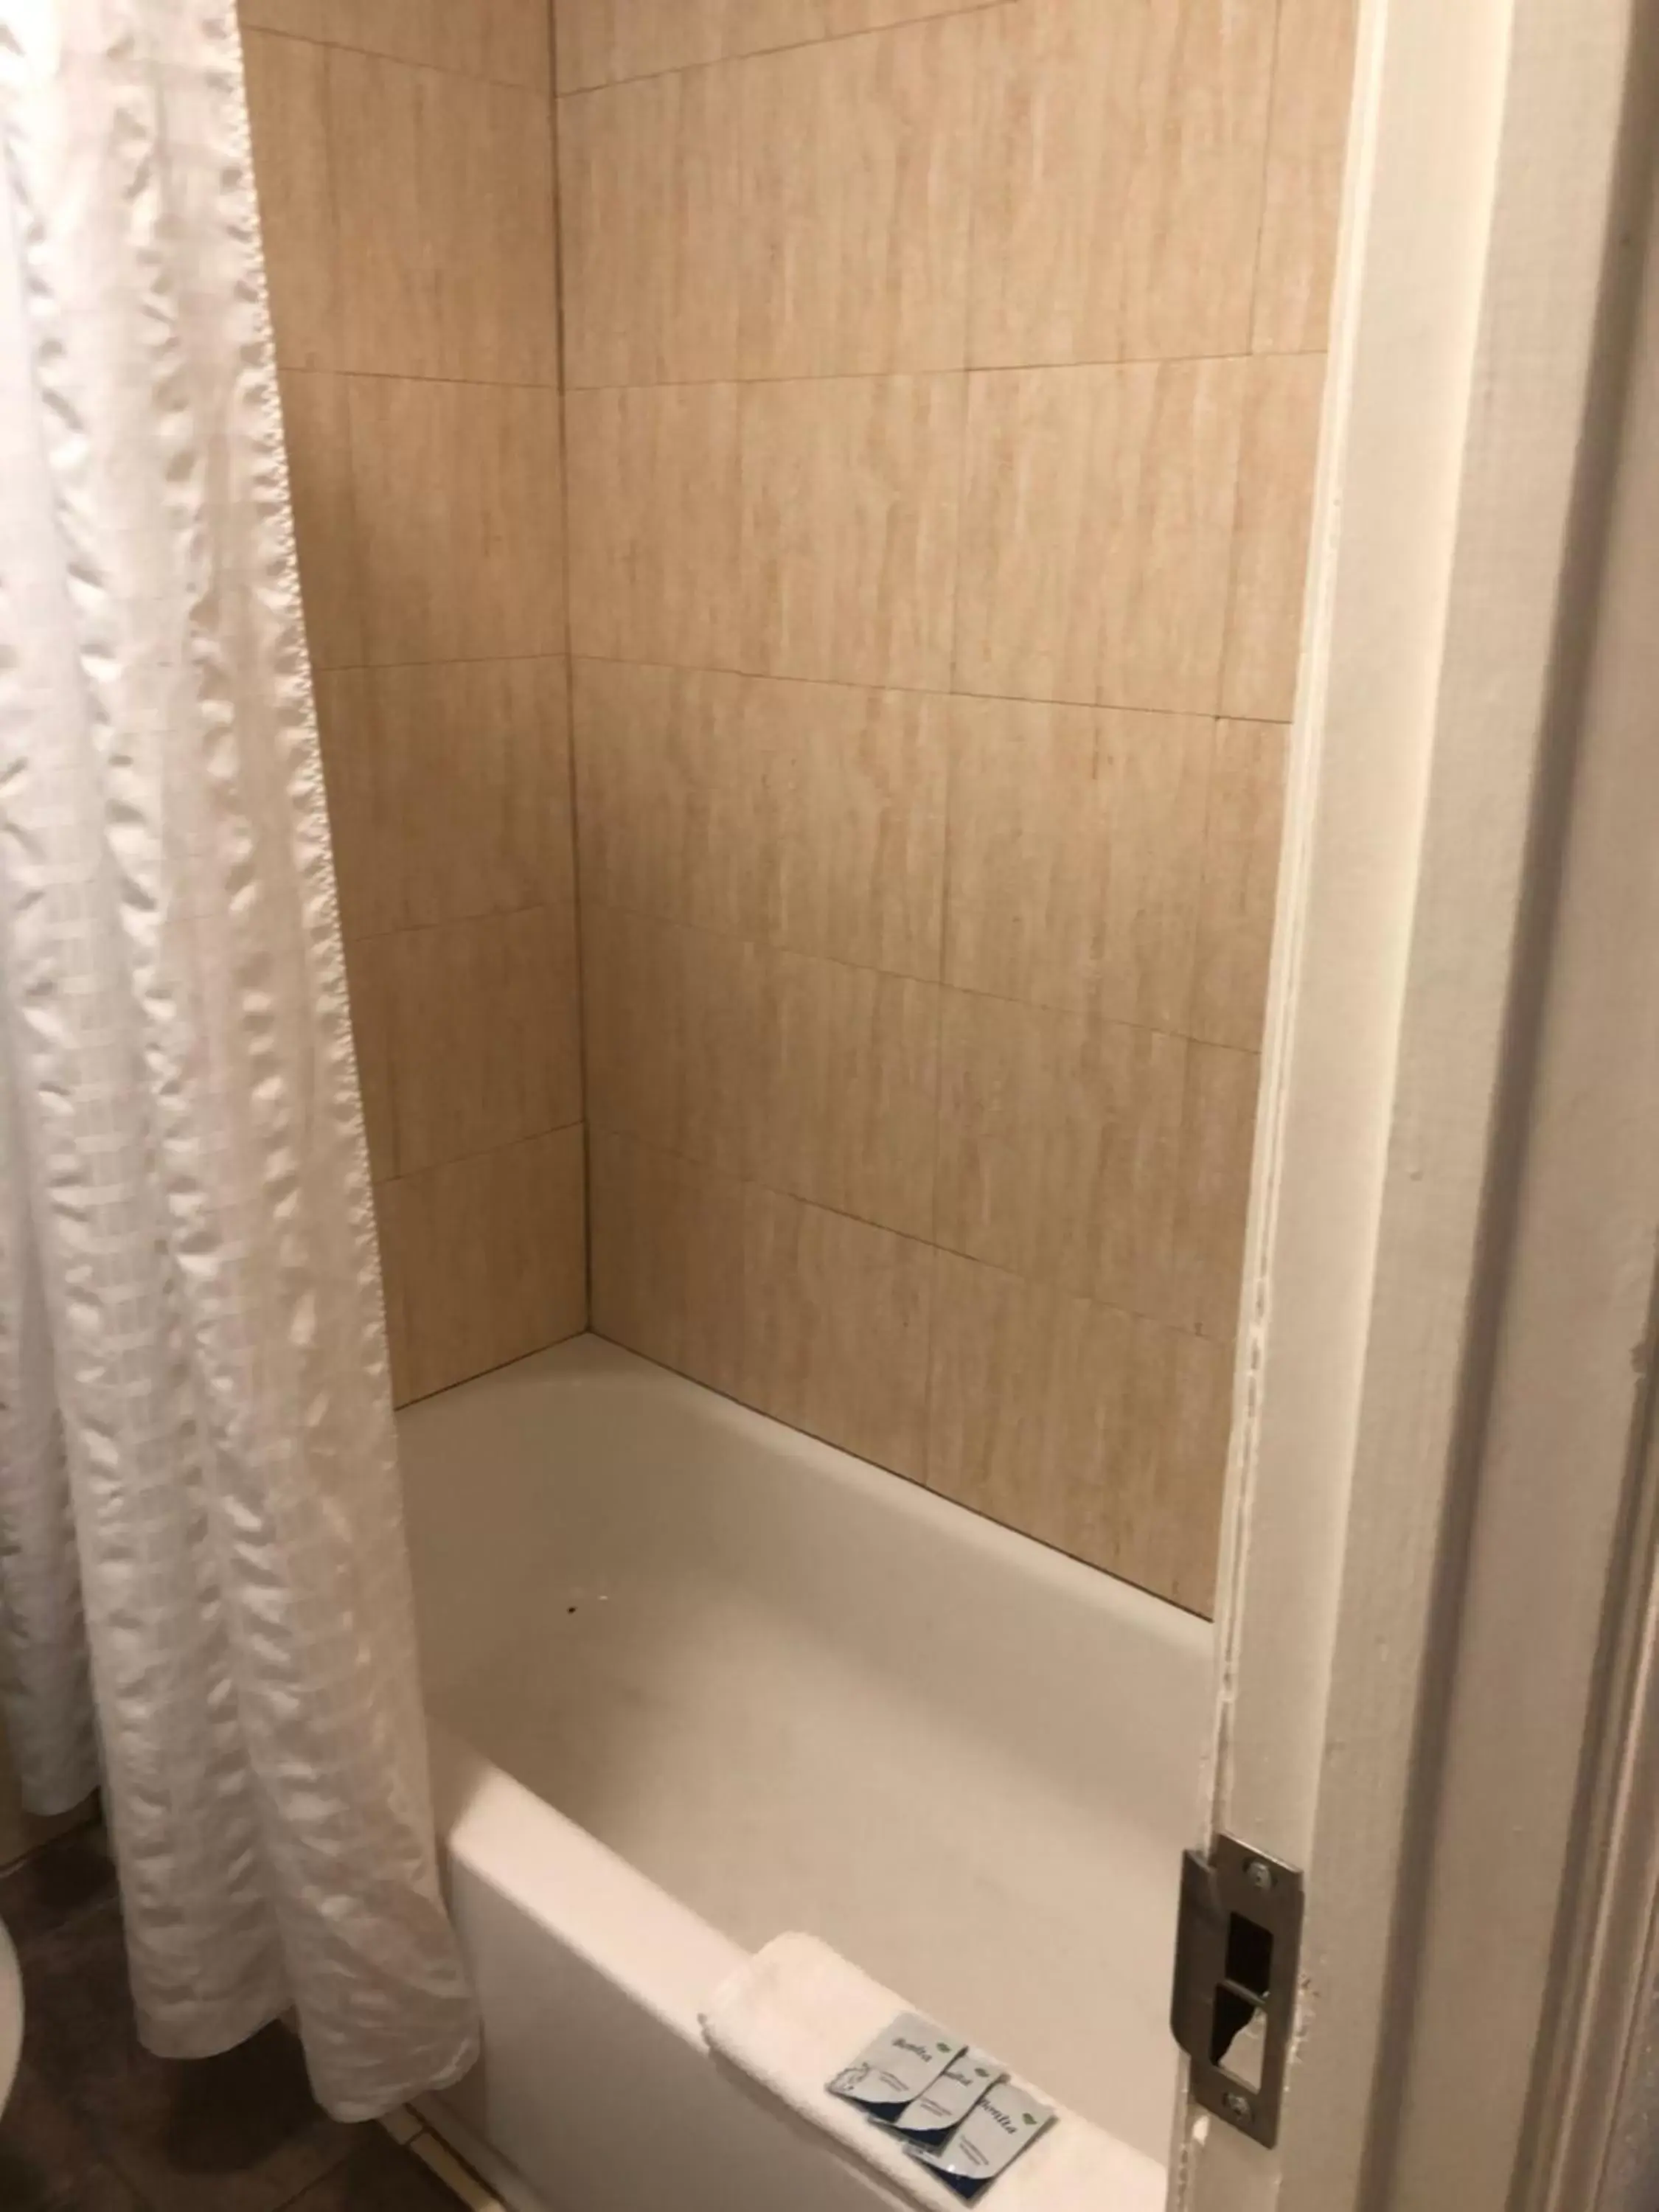 Bathroom in Hwy 59 Motel Laredo Medical Center